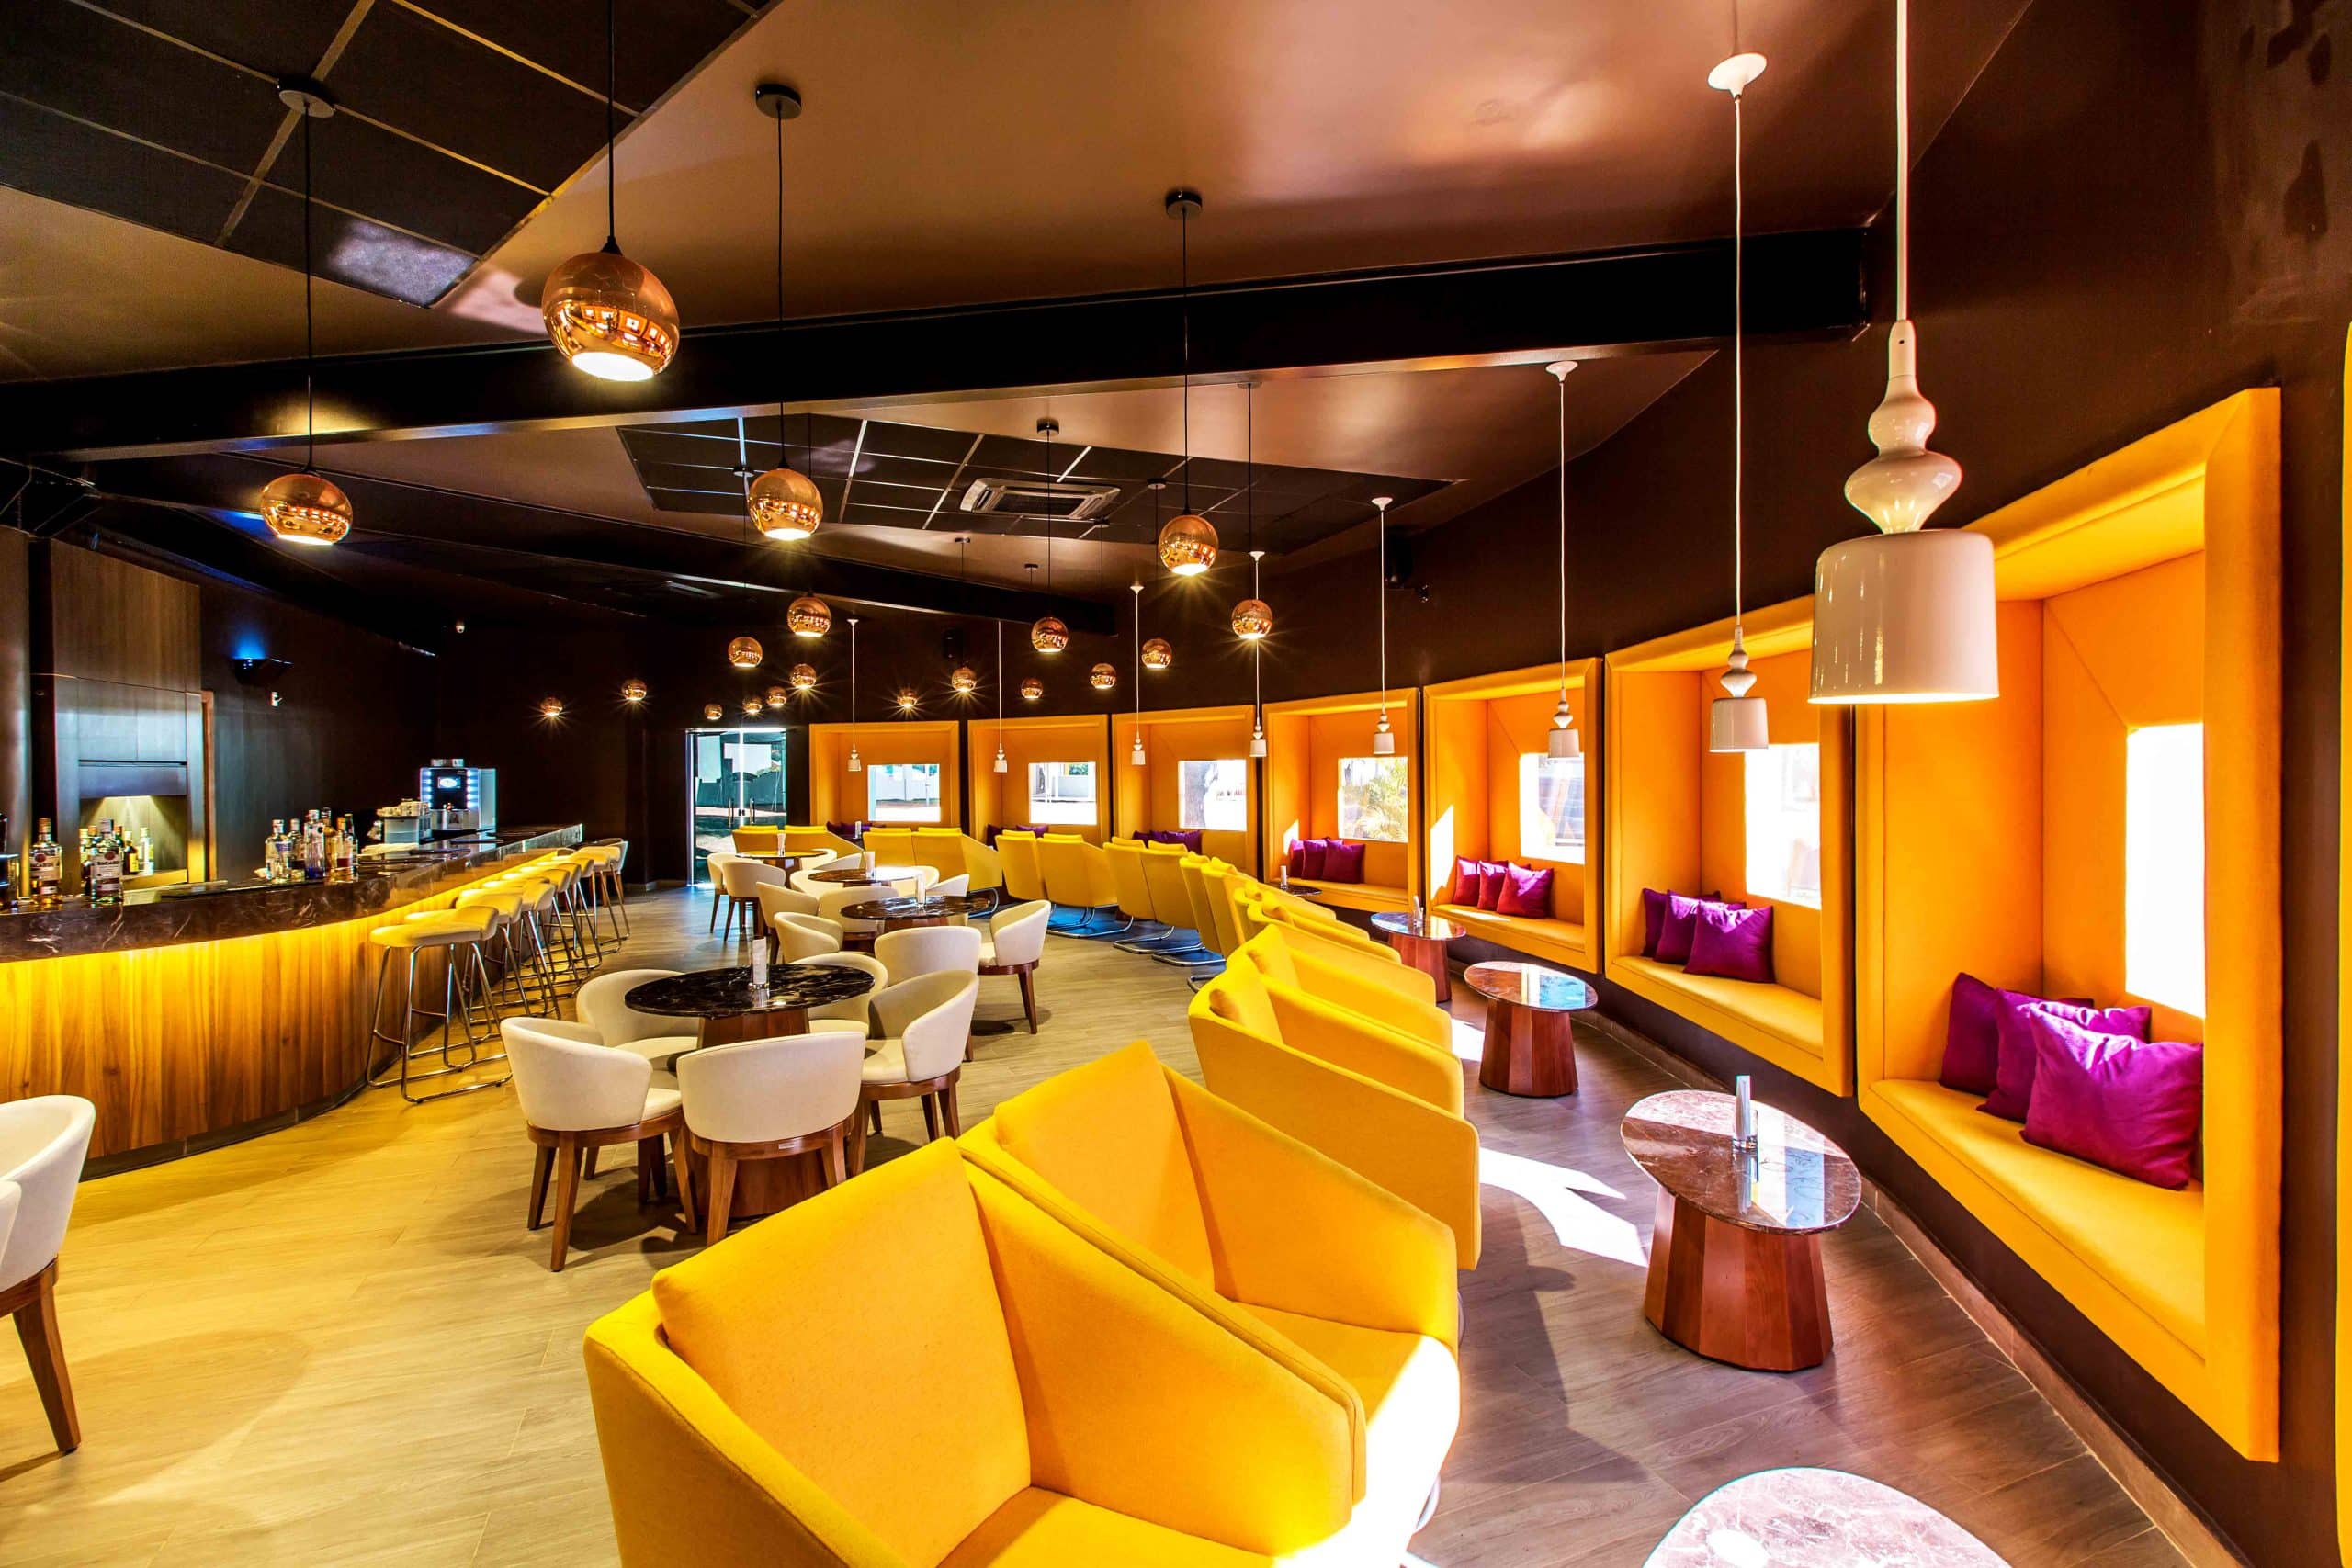 restaurante confortável com decoração arrojada, espaço amplo com ambiente intimista de bar.